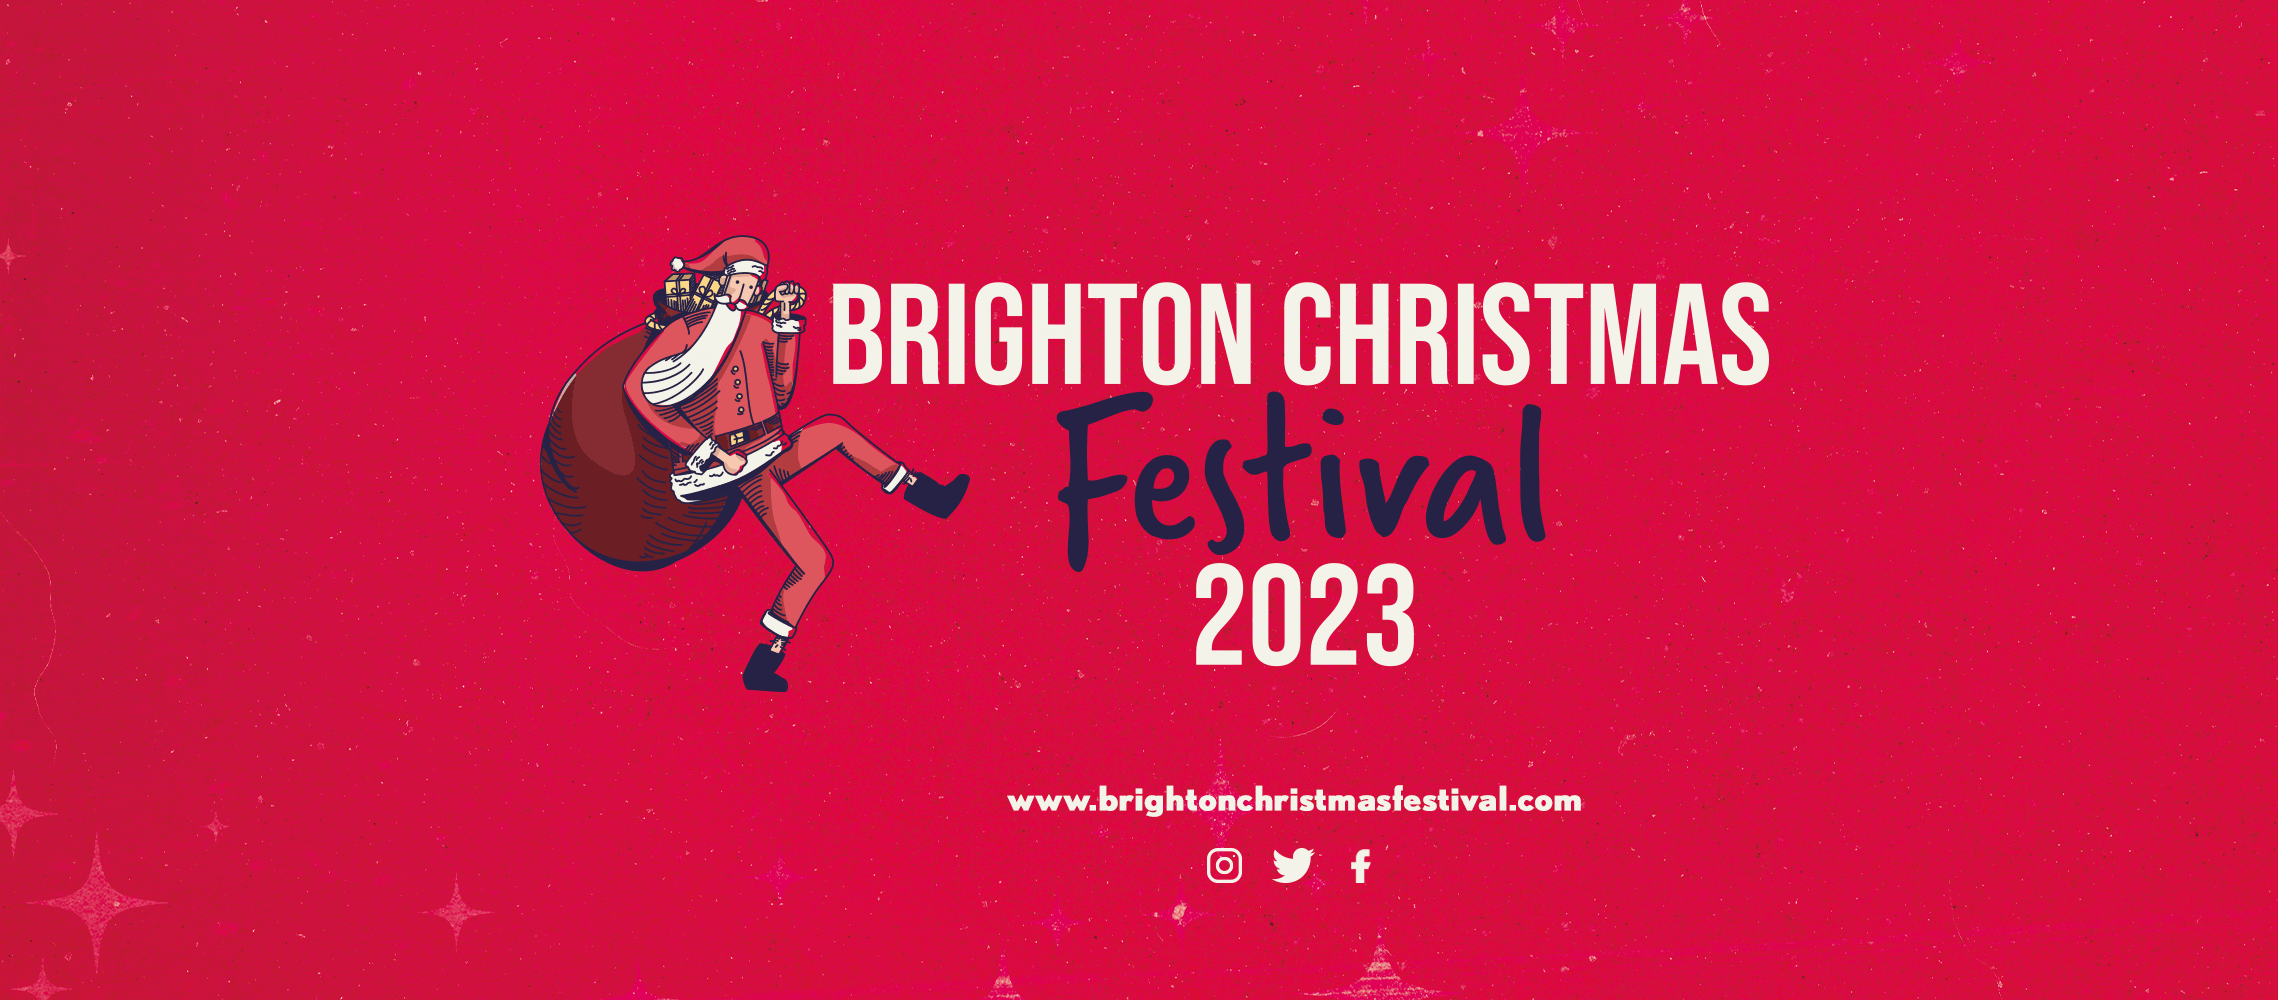 Brighton Christmas Festival 2023 Banner